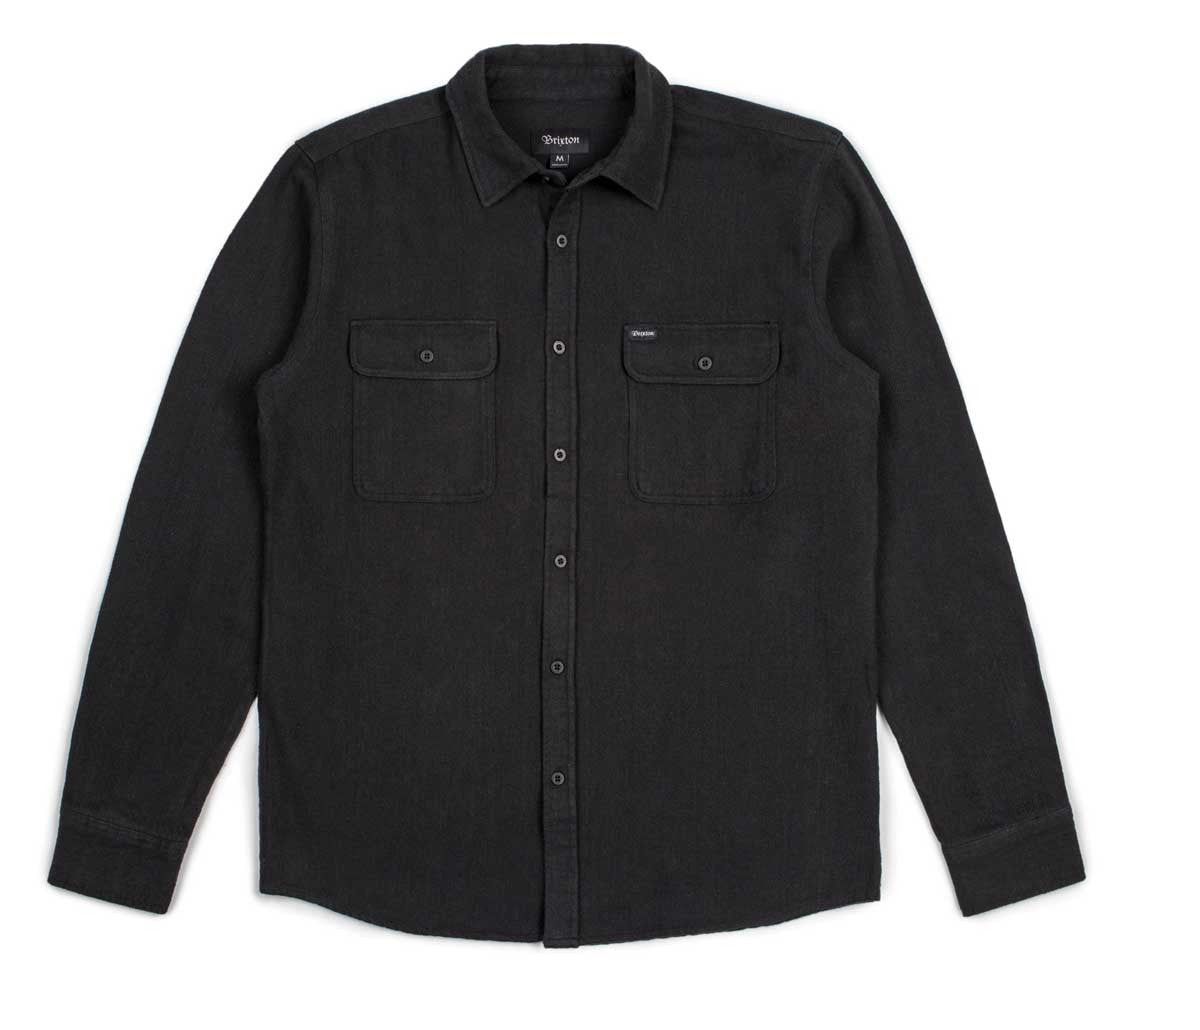 Brixton - Donez Men's Flannel L/S Shirt, Black/Black - The Giant Peach